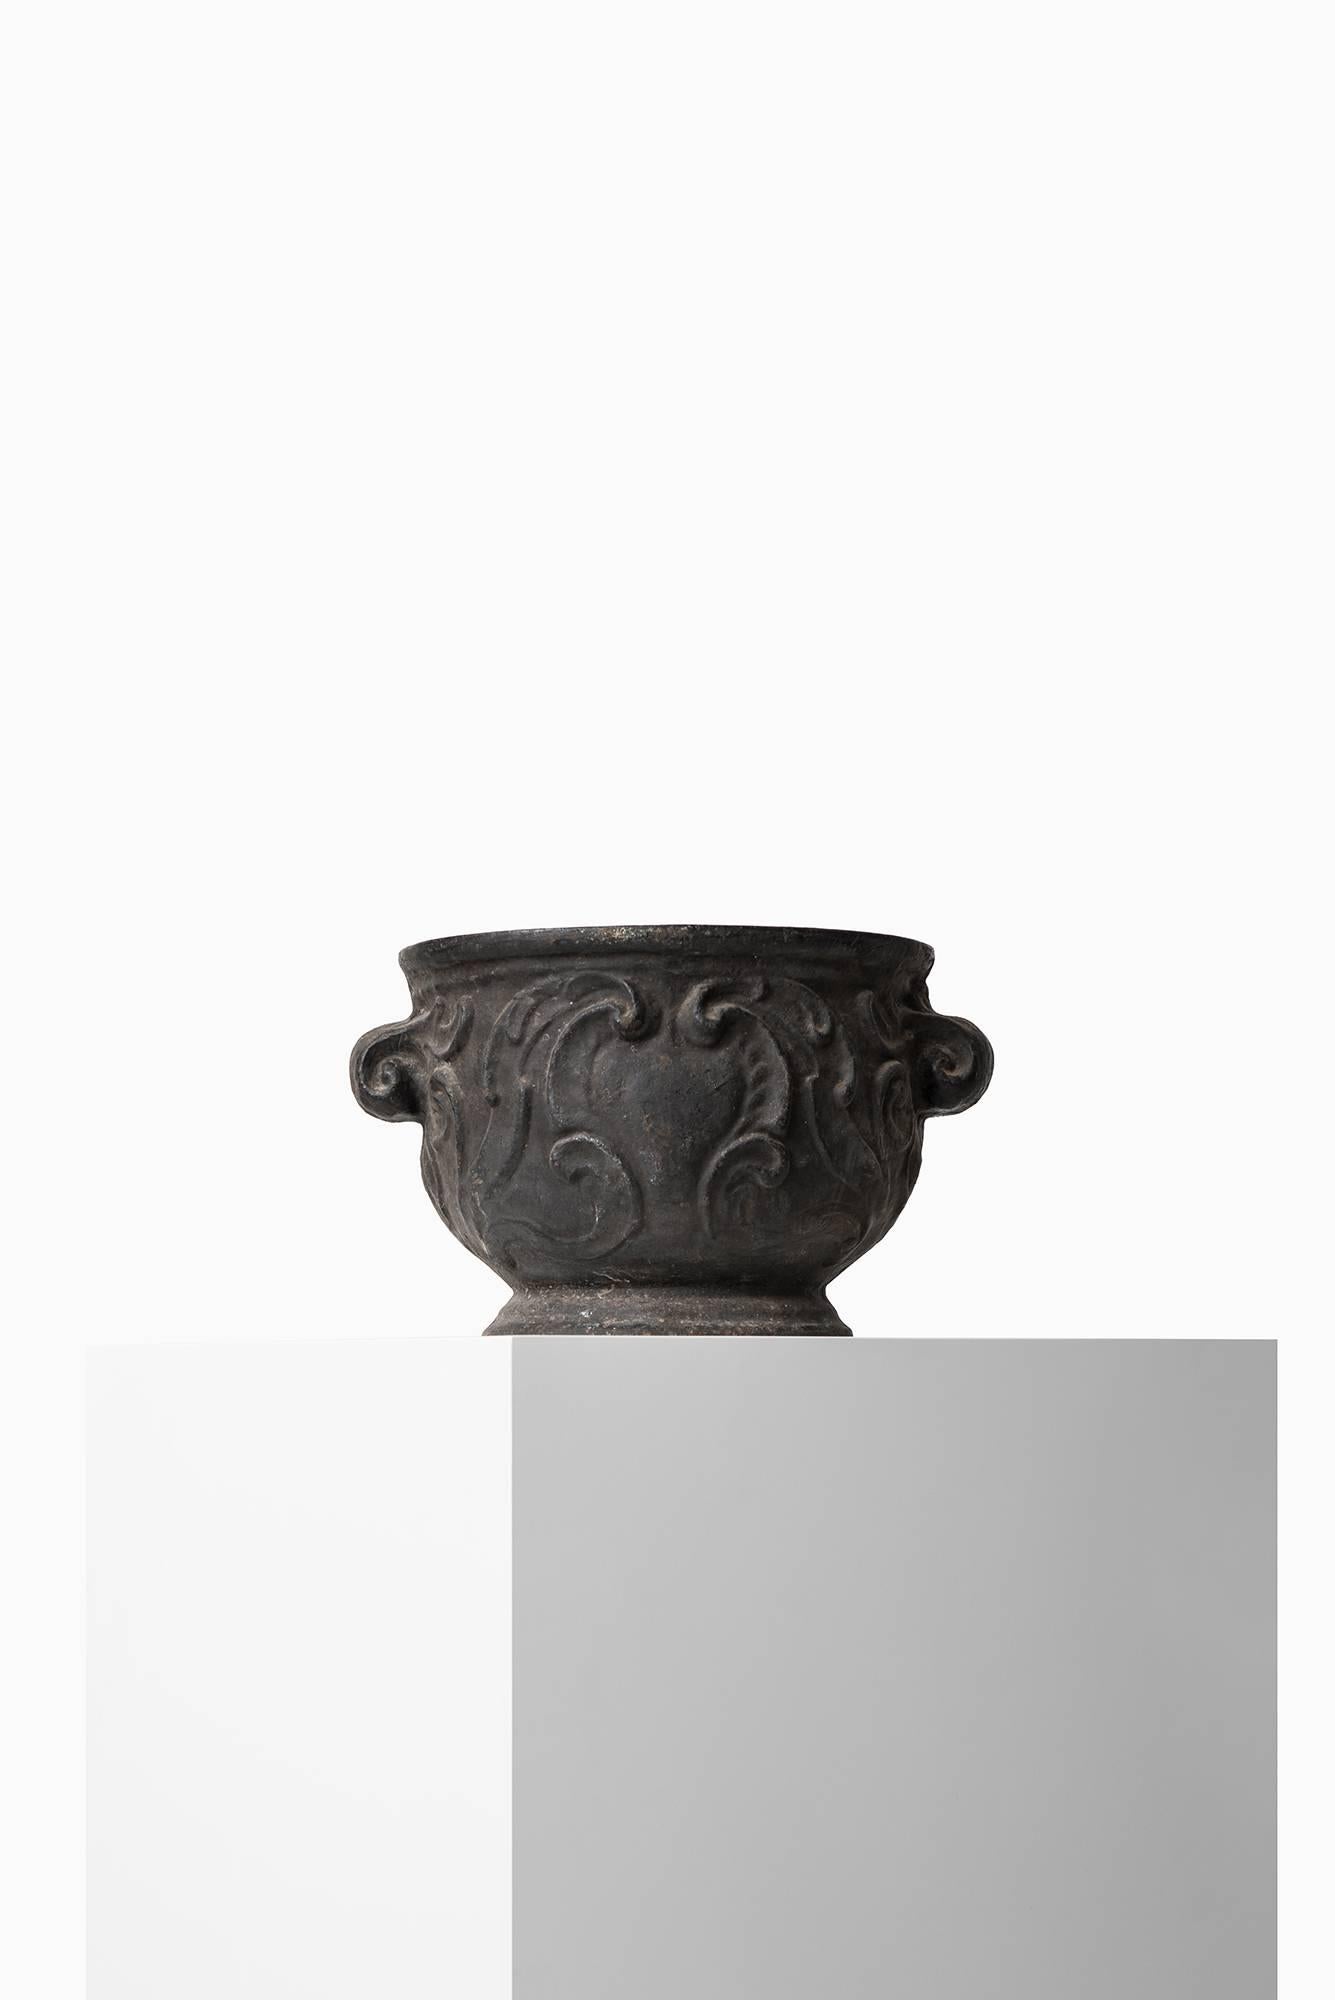 Rare urn ‘Barockurnan’ produced by Näfveqvarns Bruk in Sweden.